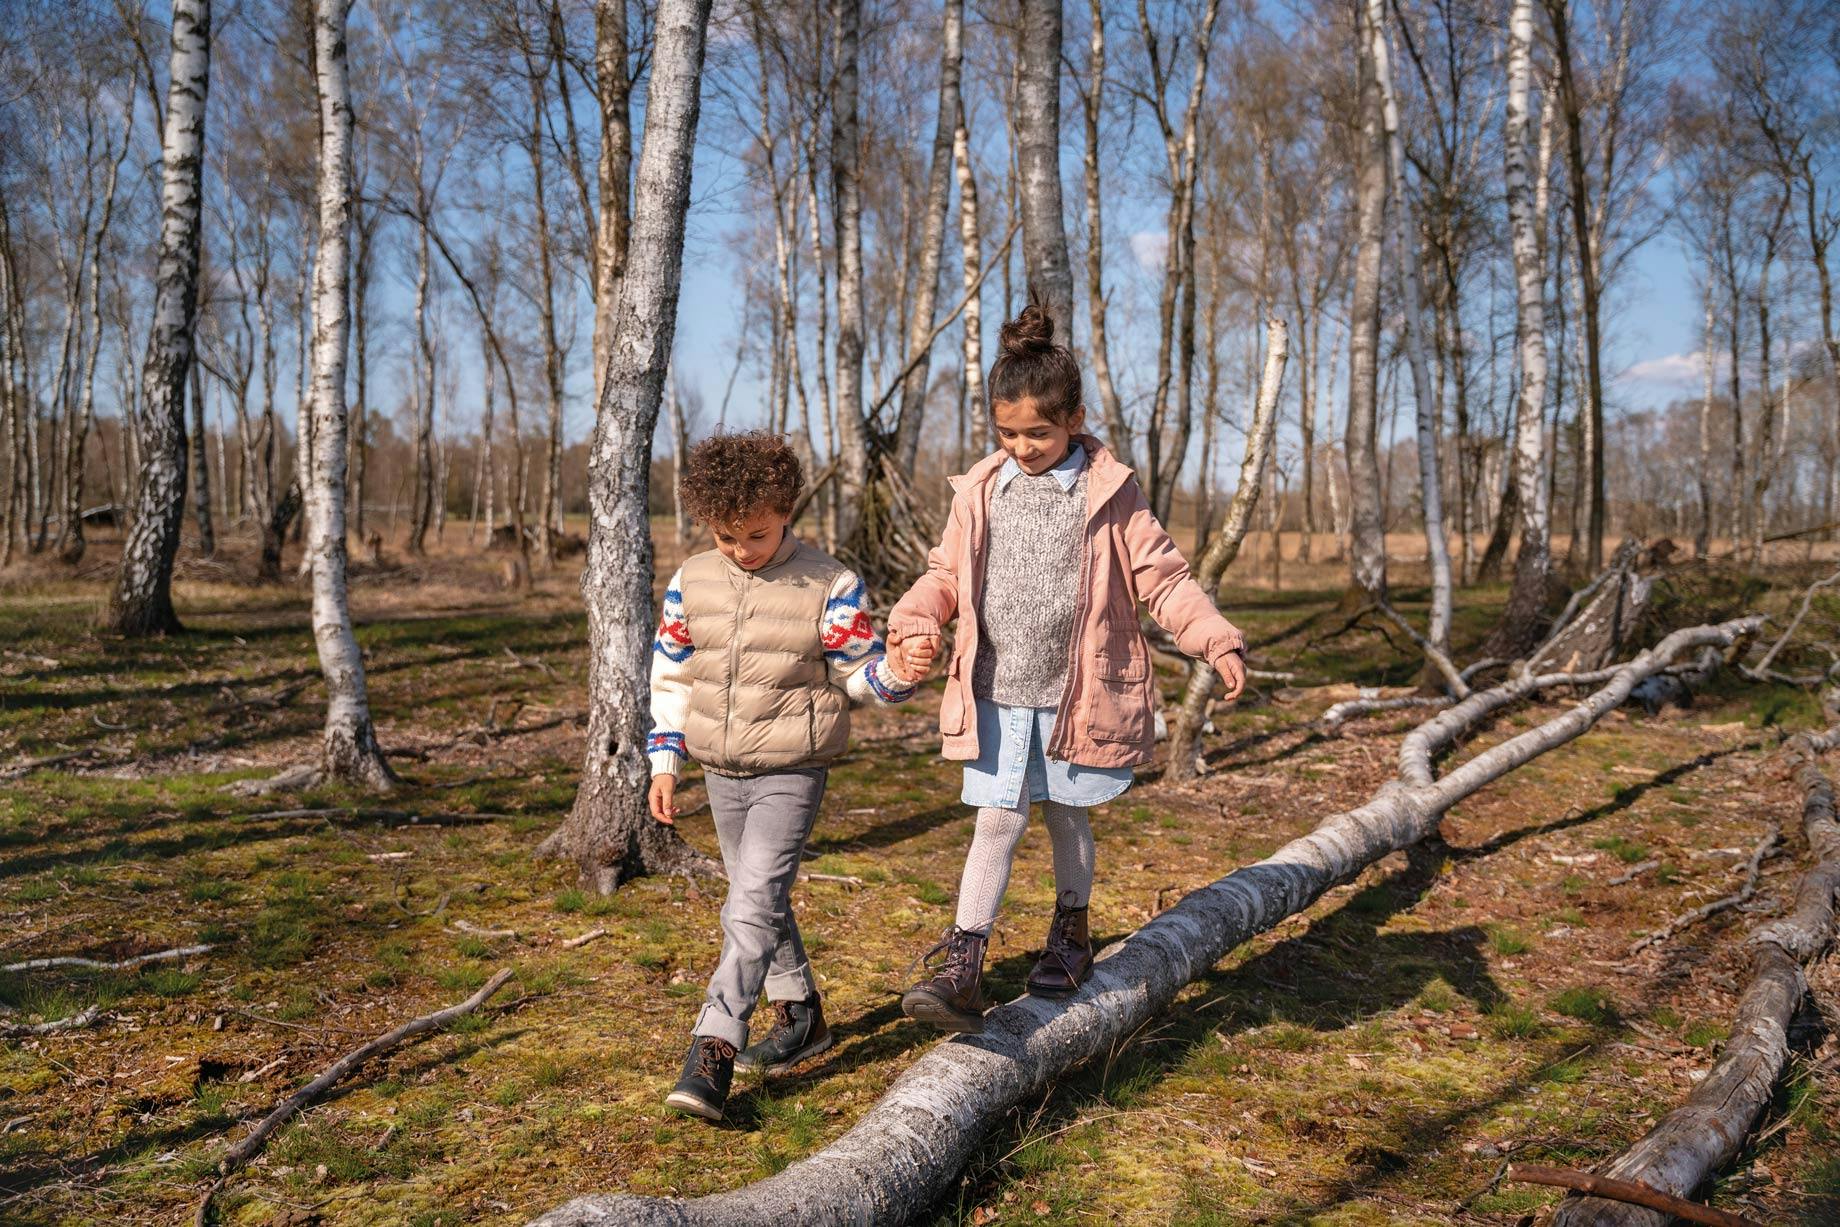 Zwei Kinder spielen mit neuen Schuhen im Wald auf Bäumen